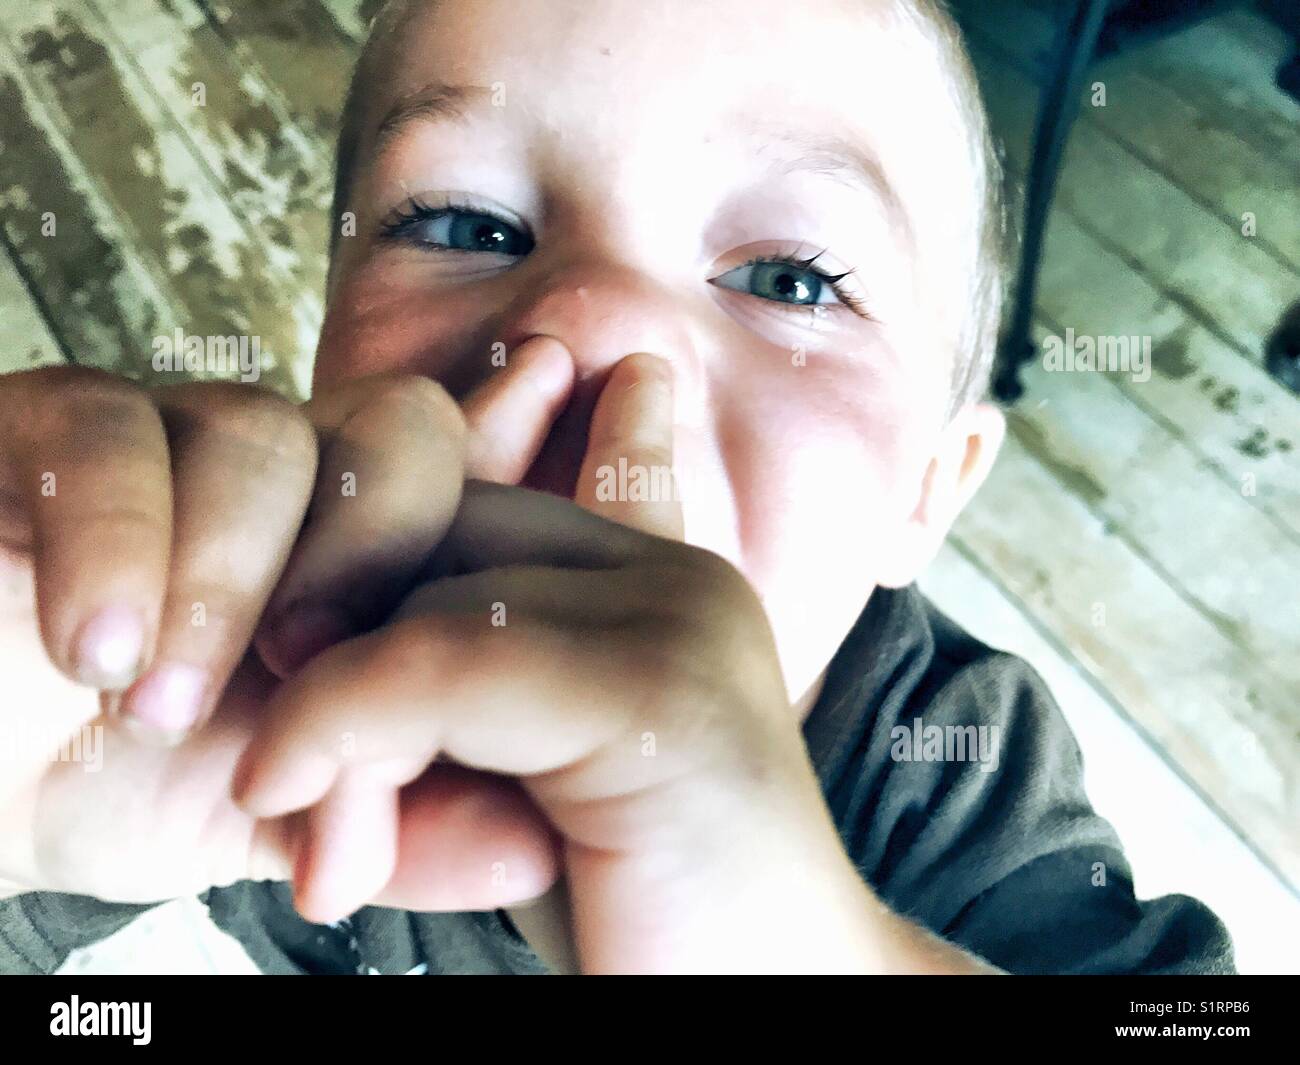 Immagine del giovane ragazzo sticking dita nelle sue narici Foto Stock